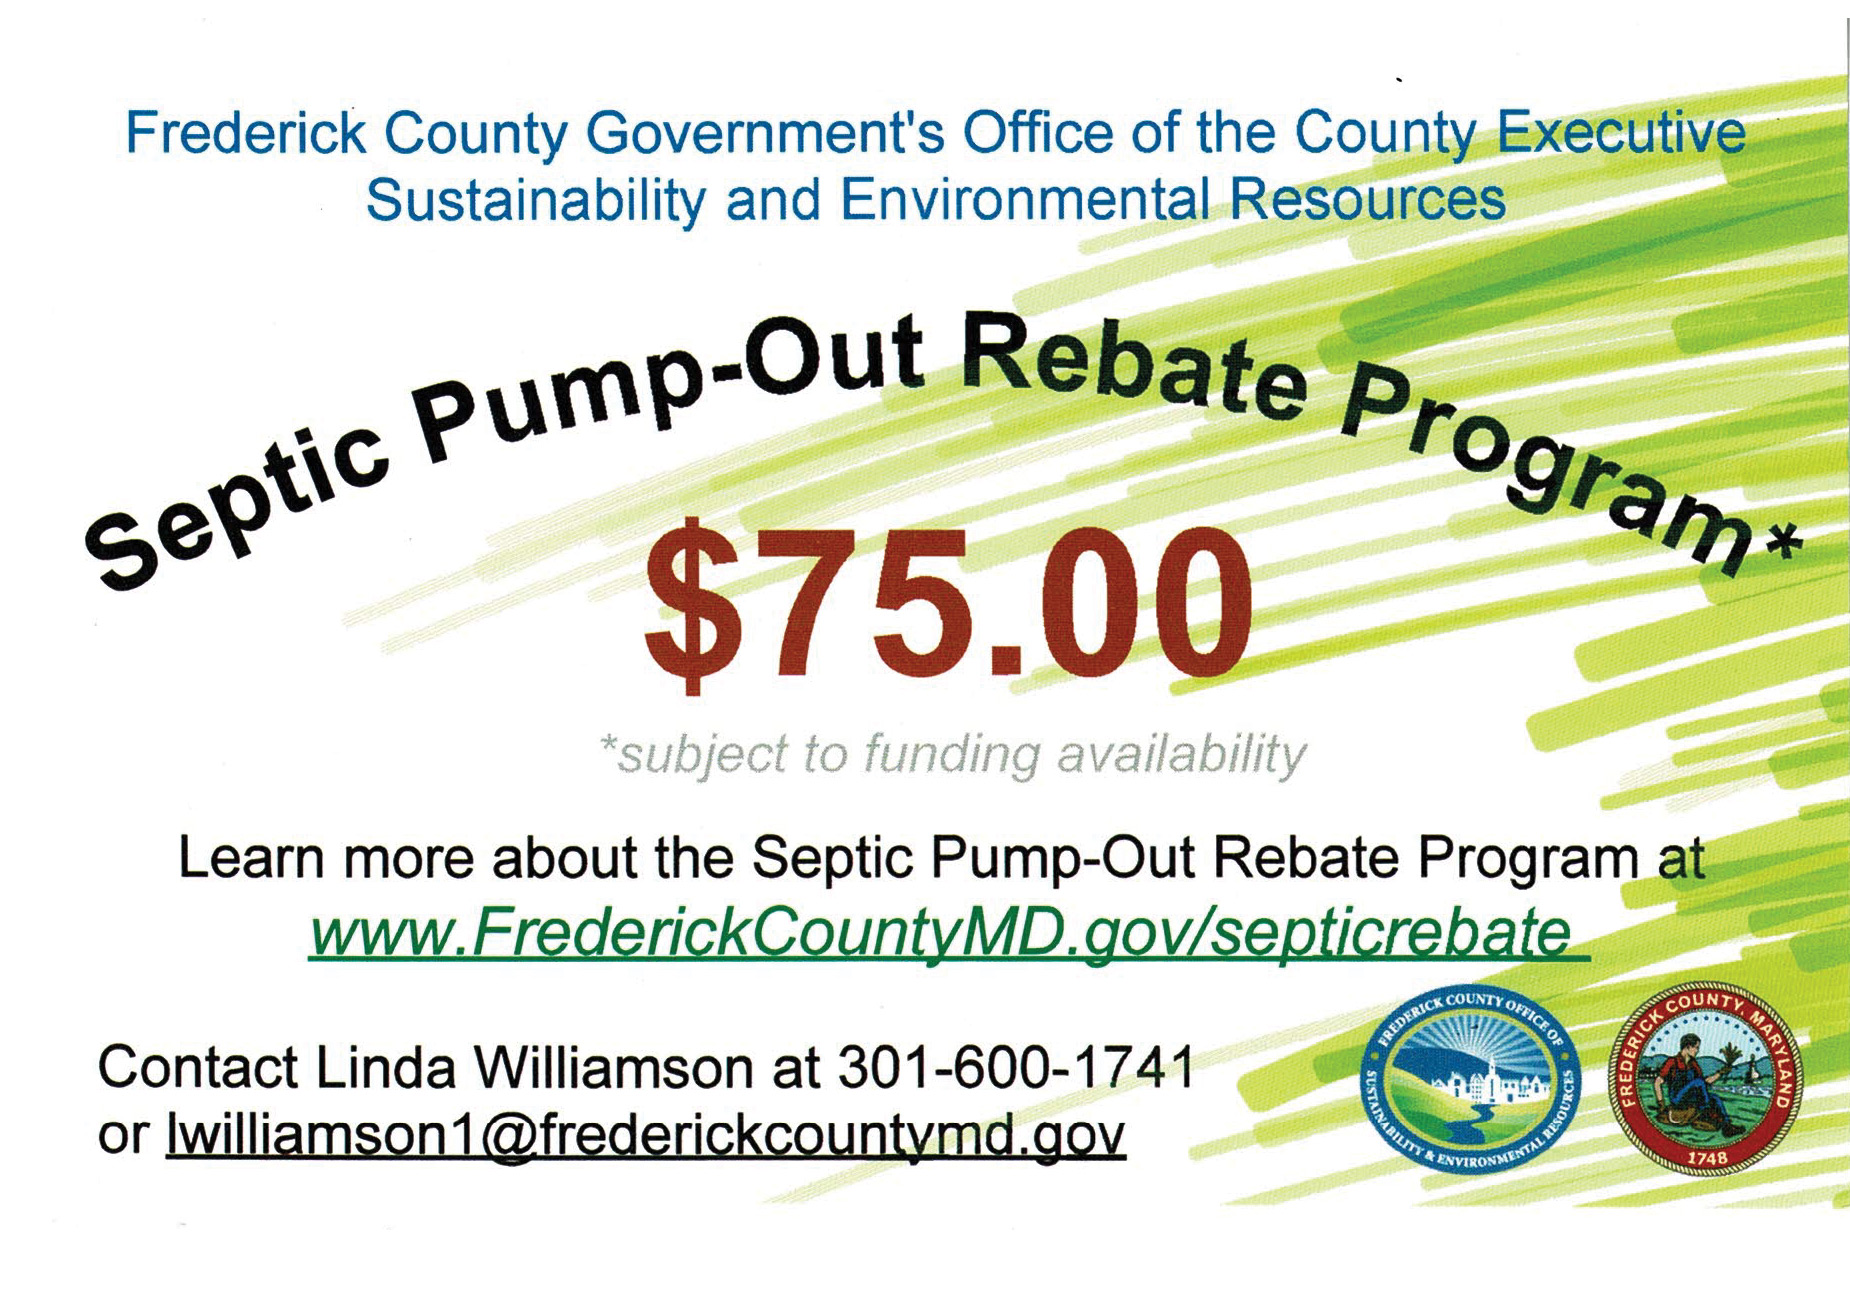 septic-pump-out-rebate-program-hurd-builders-llc